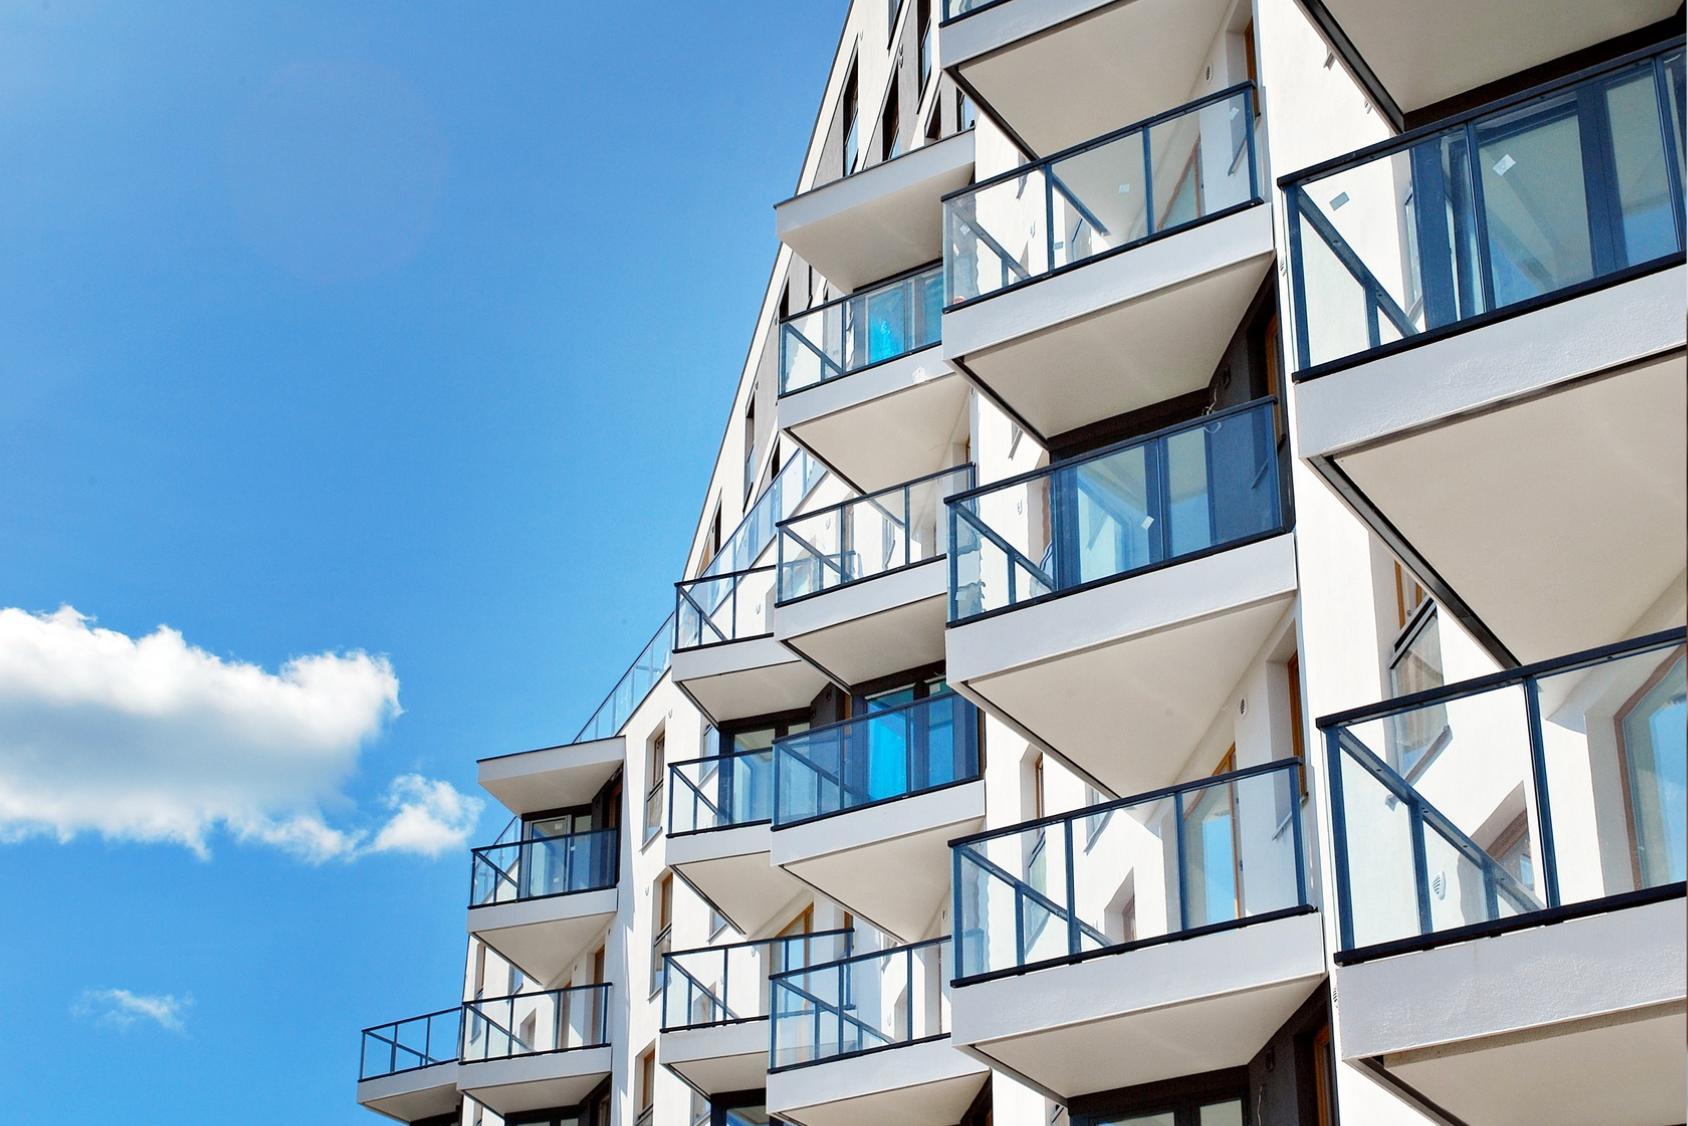 Reba Immobilien vermittelt Mehrfamilienhaus-Paket mit 40 Wohneinheiten in Berlin und Chemnitz